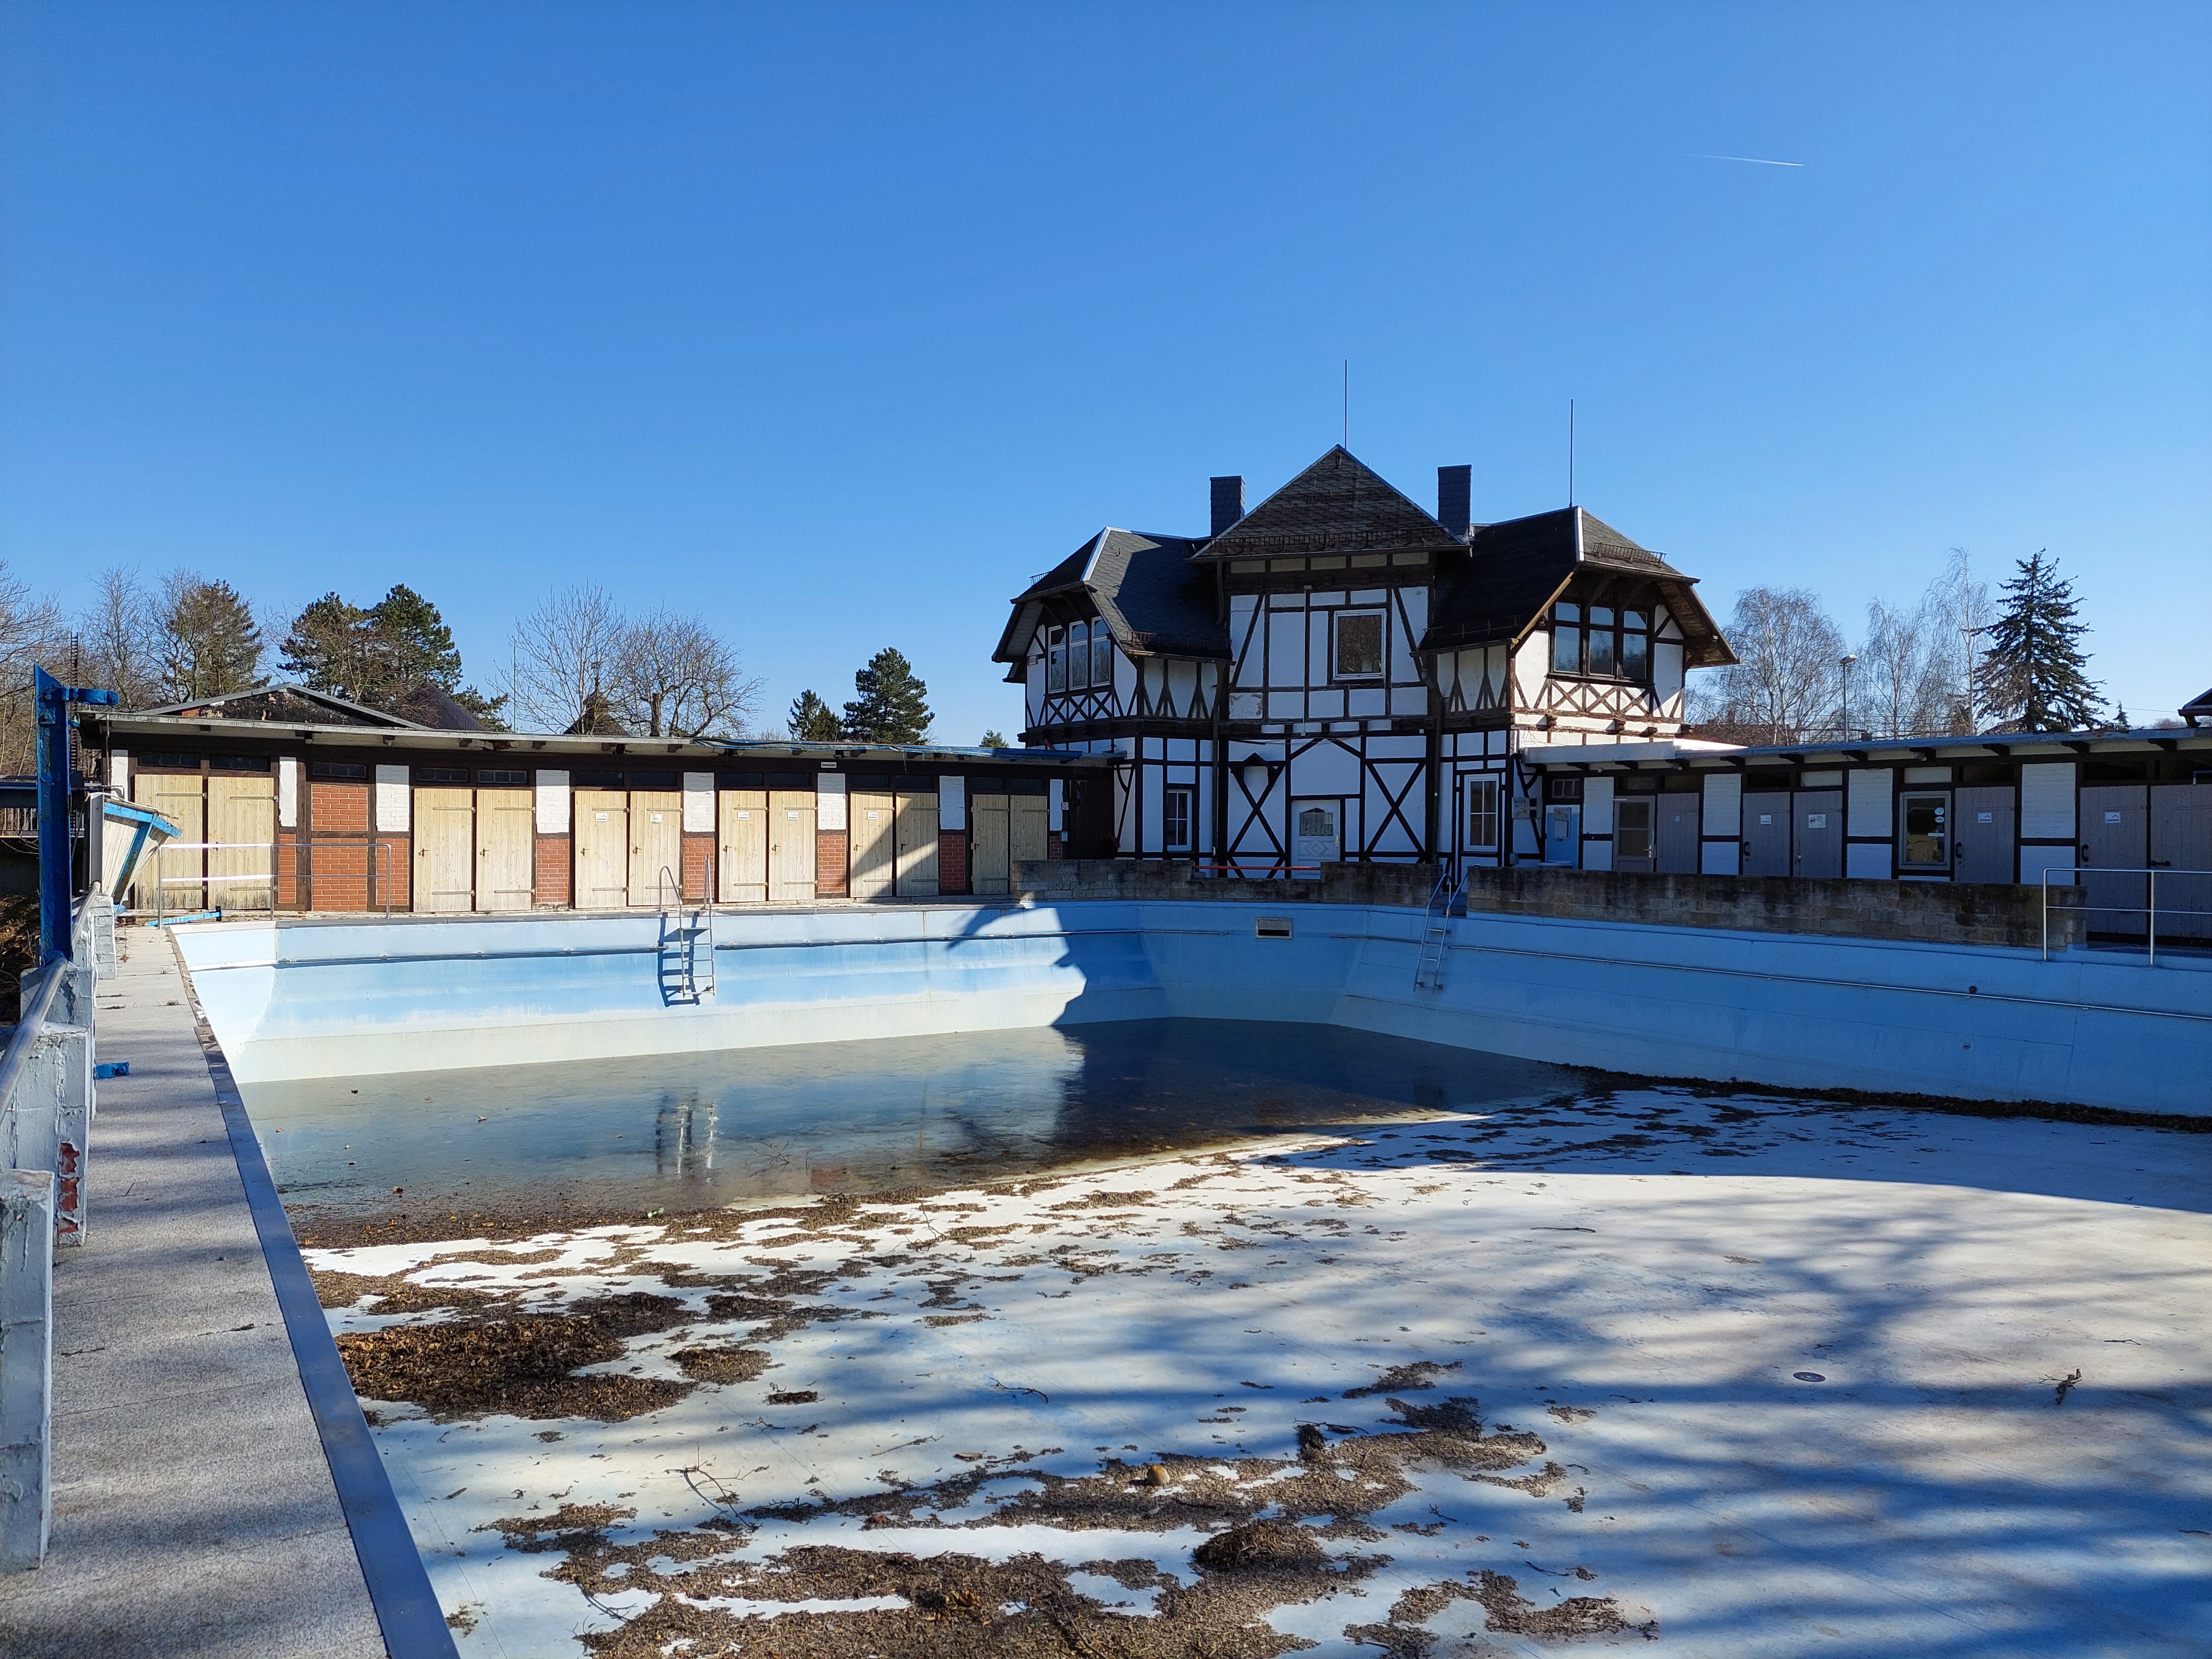 Das Bild zeigt ein Freibad im Winter. Das Becken ist leer. Im Hintergrund steht ein Fachwerkhaus.